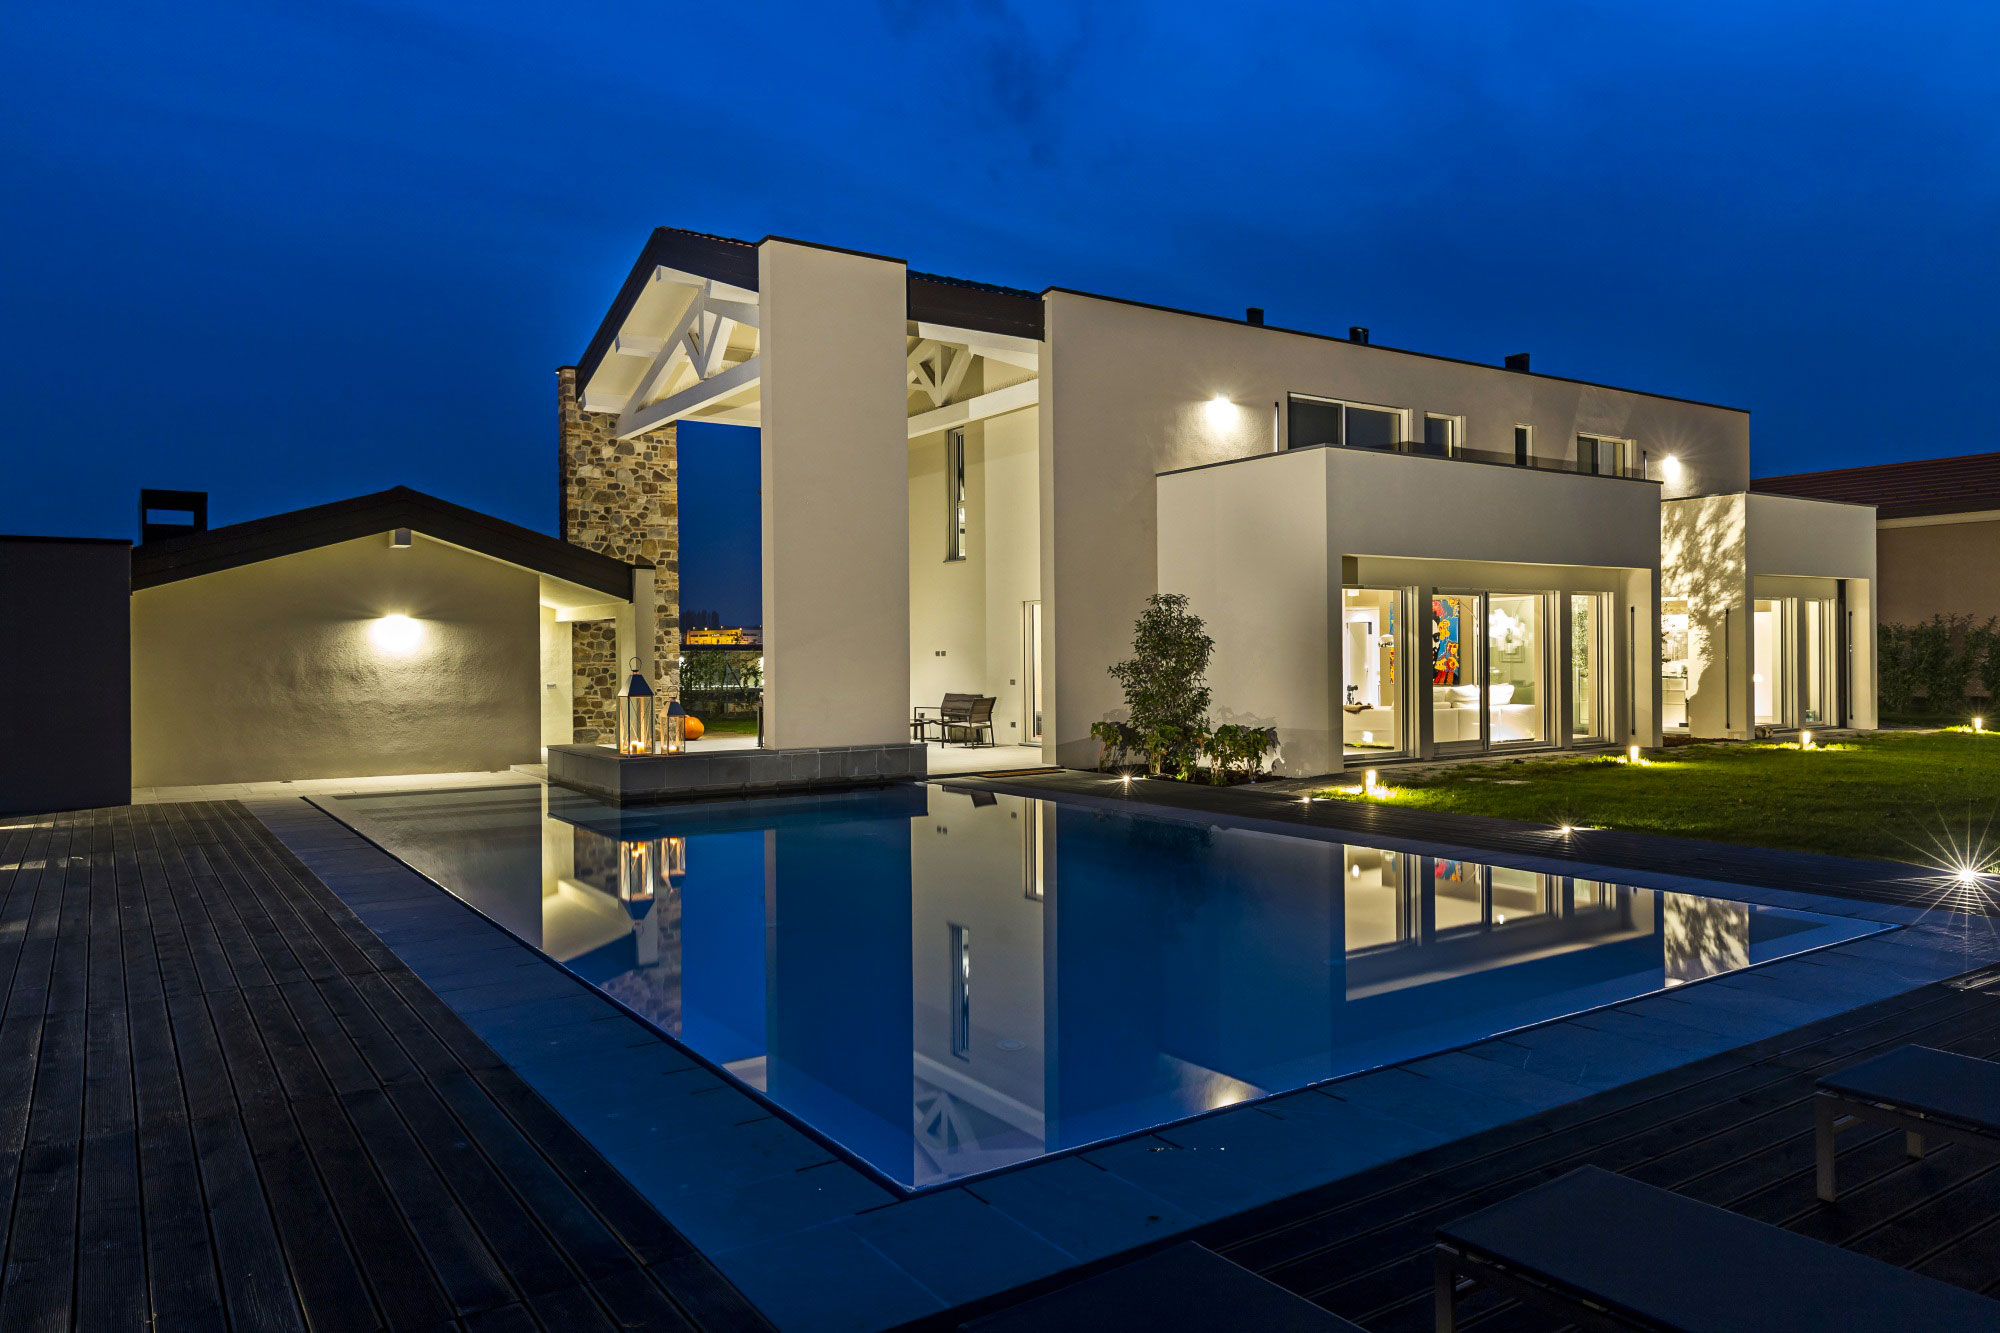 Imagen de noche con una casa iluminada, junto al jardín y la piscina